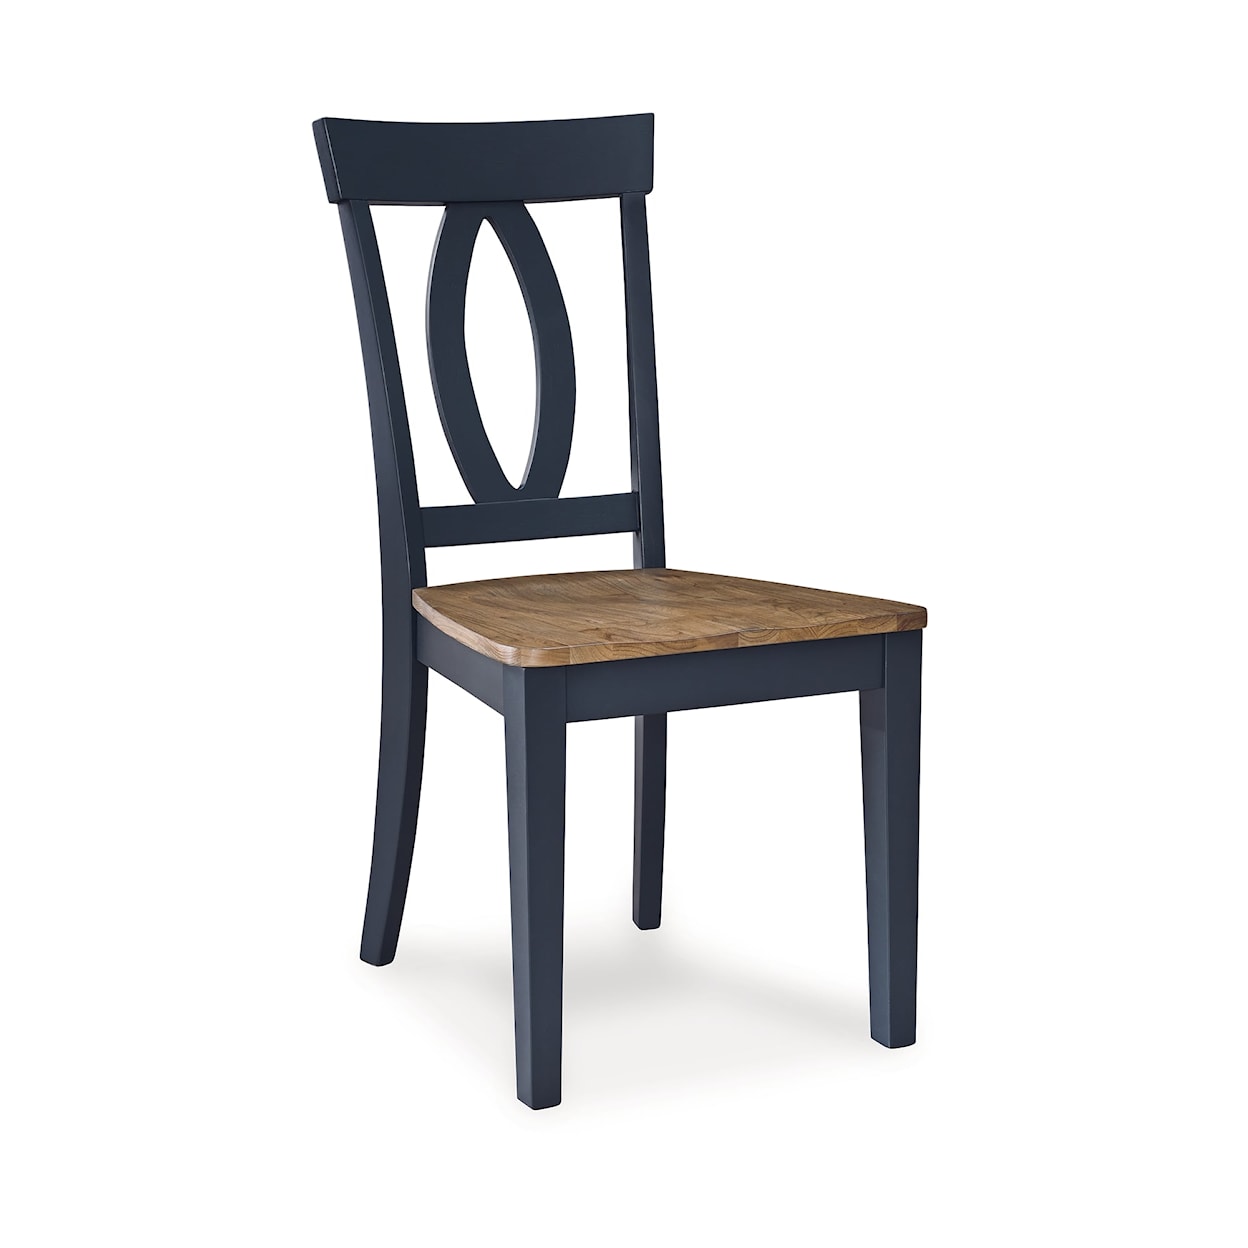 Benchcraft Landocken Dining Room Side Chair